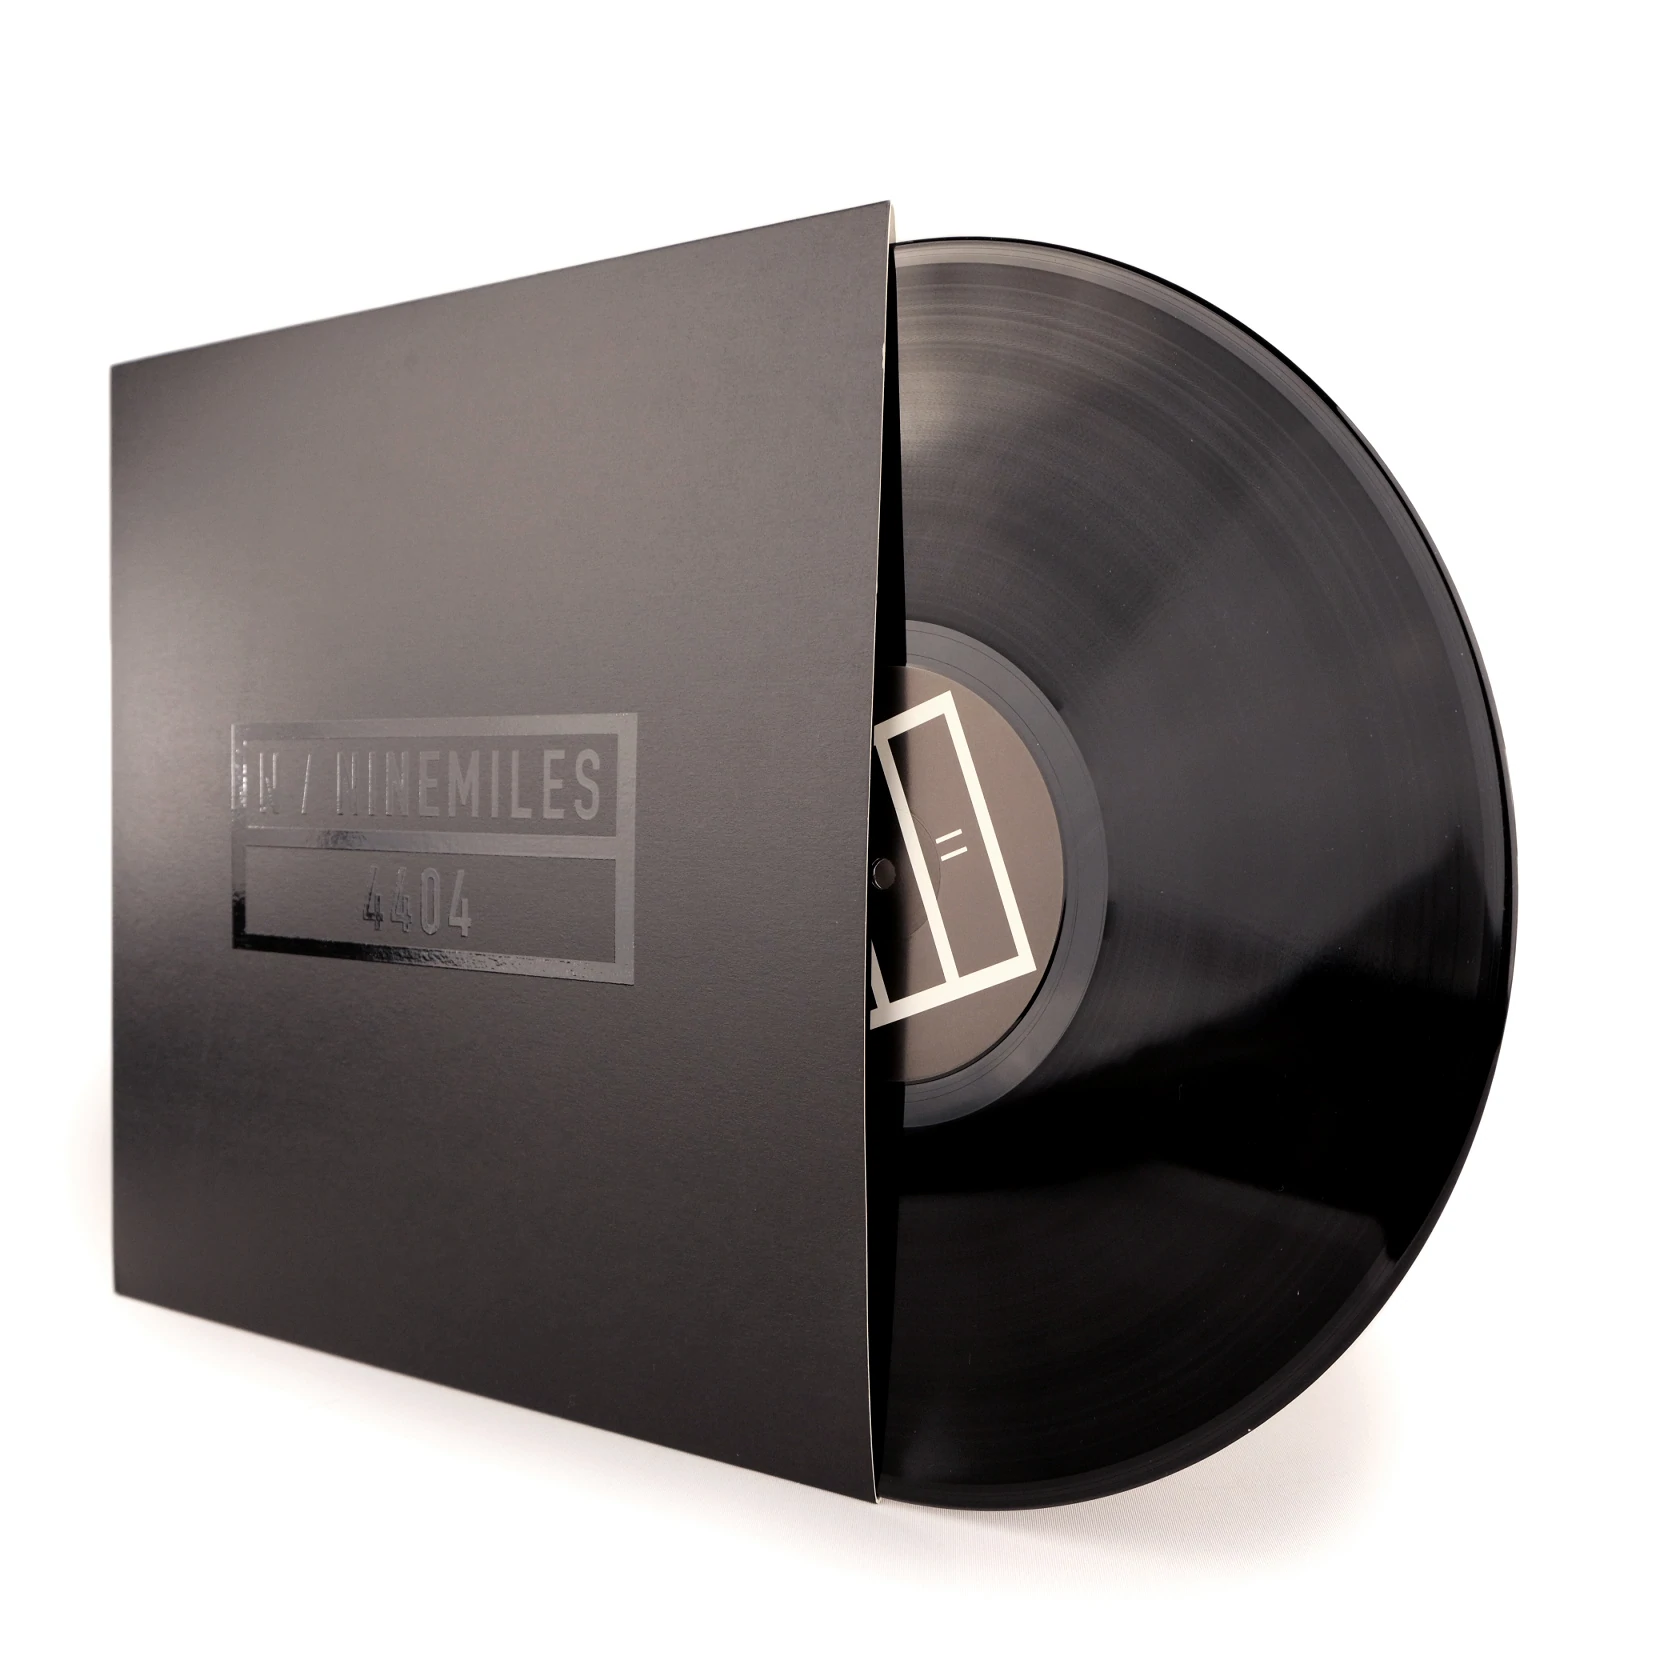 N + NINEMILES // 44.04 - BLACK VINYL (LP)